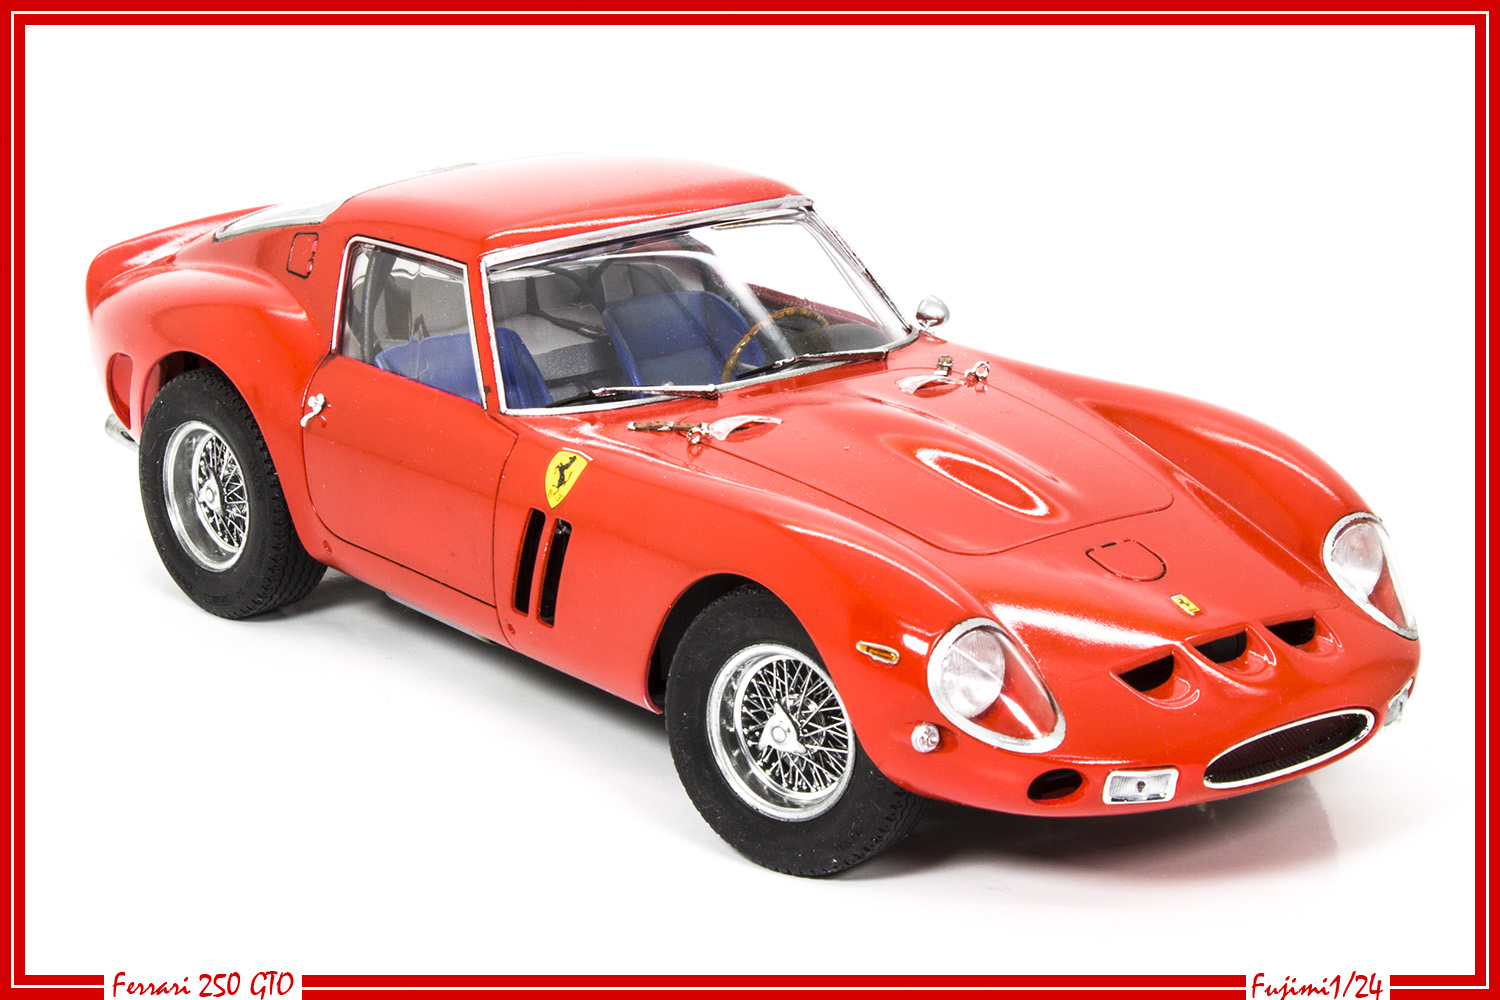 Ferrari 250 GTO - Fujimi 1/24 - Page 3 24030906564726118118369840